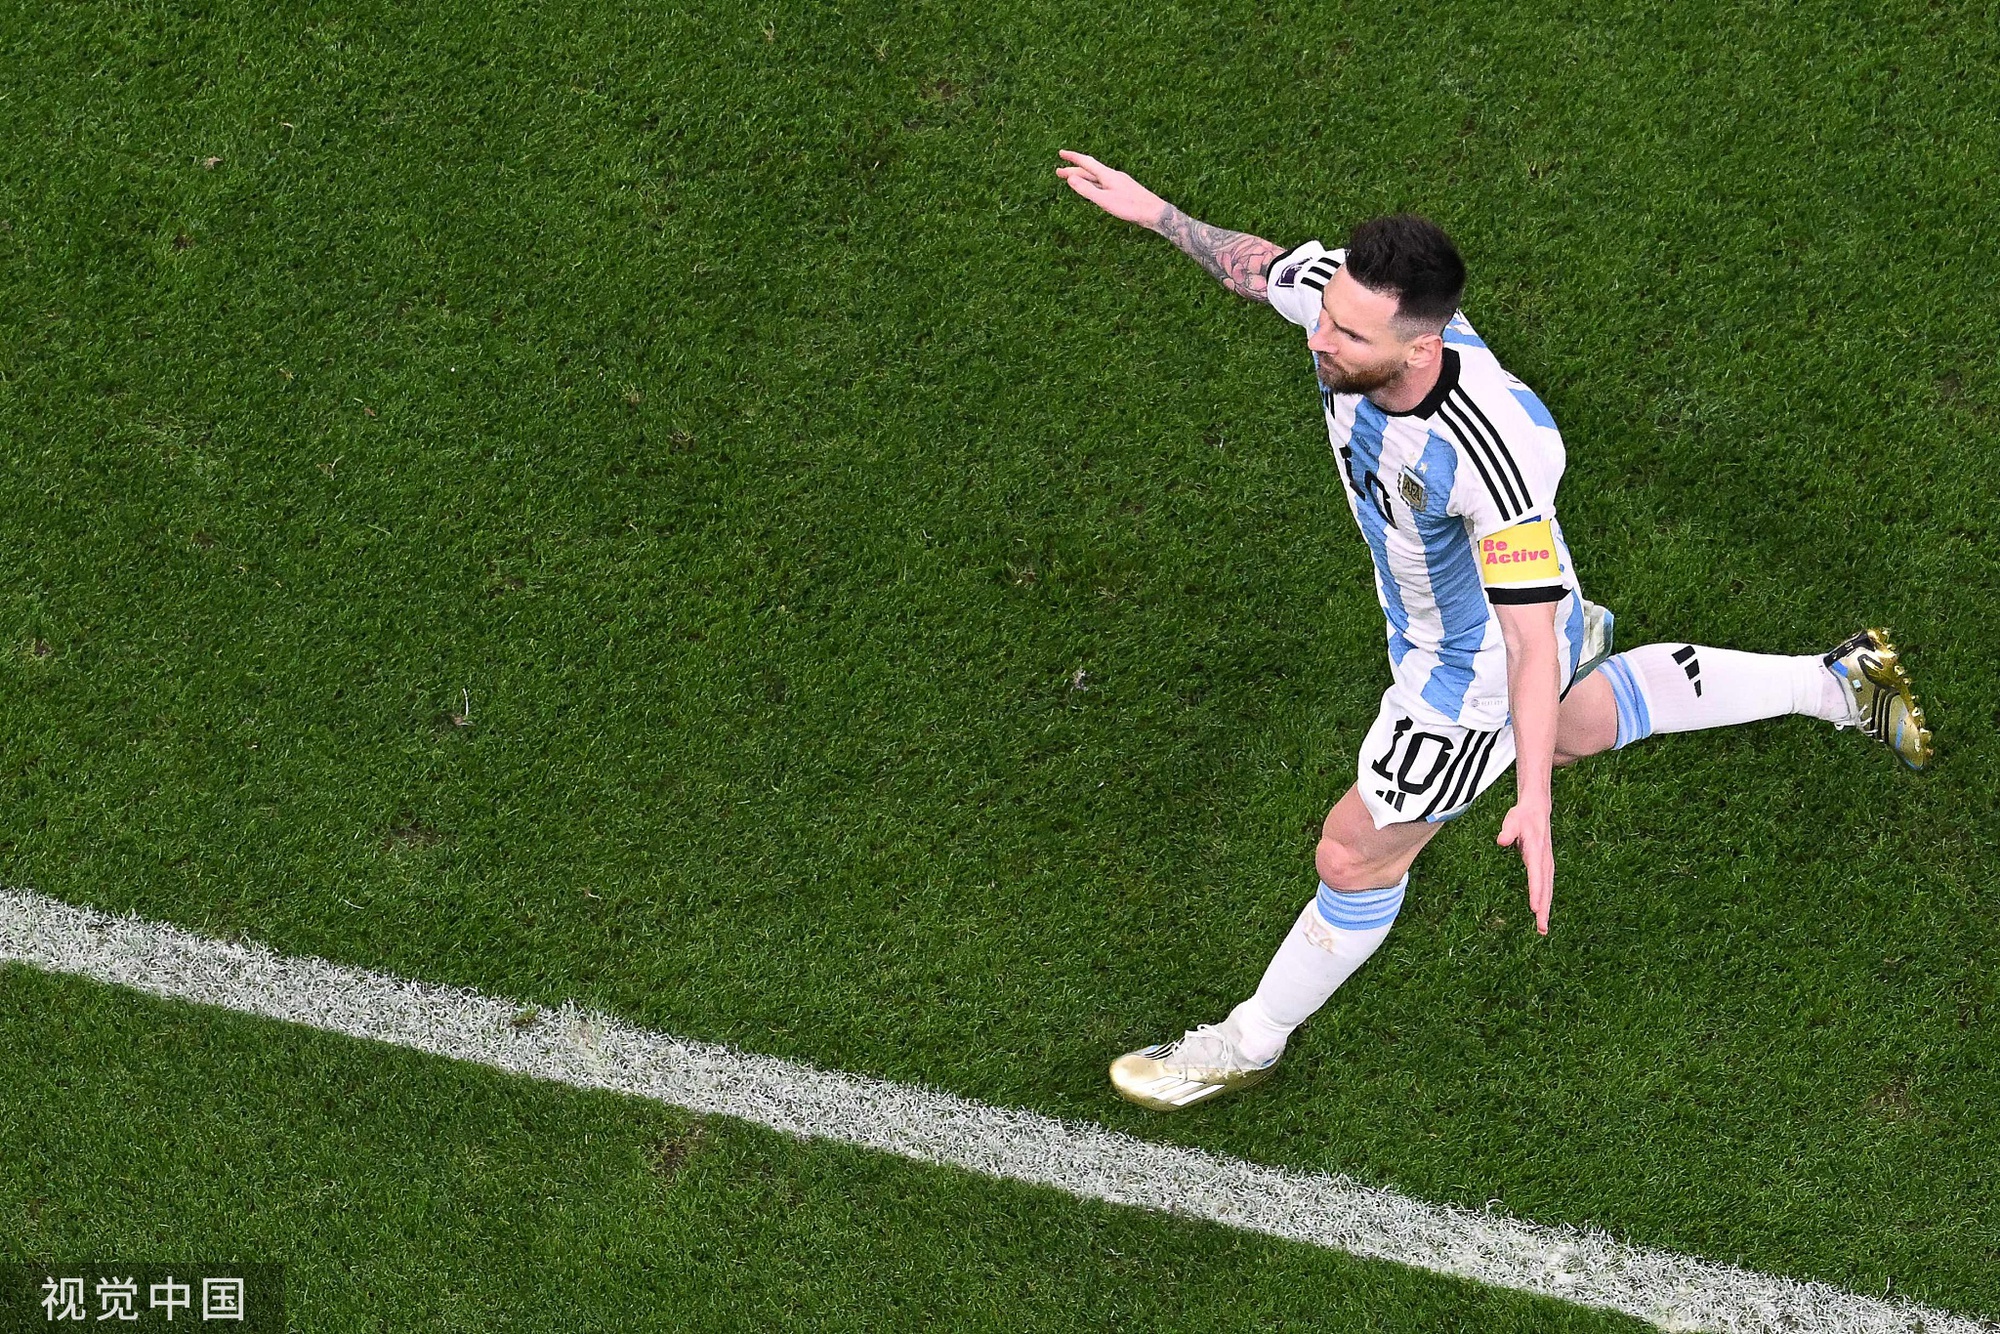 Vô địch World Cup hay không, Messi vẫn là cầu thủ vĩ đại nhất - Ảnh 3.